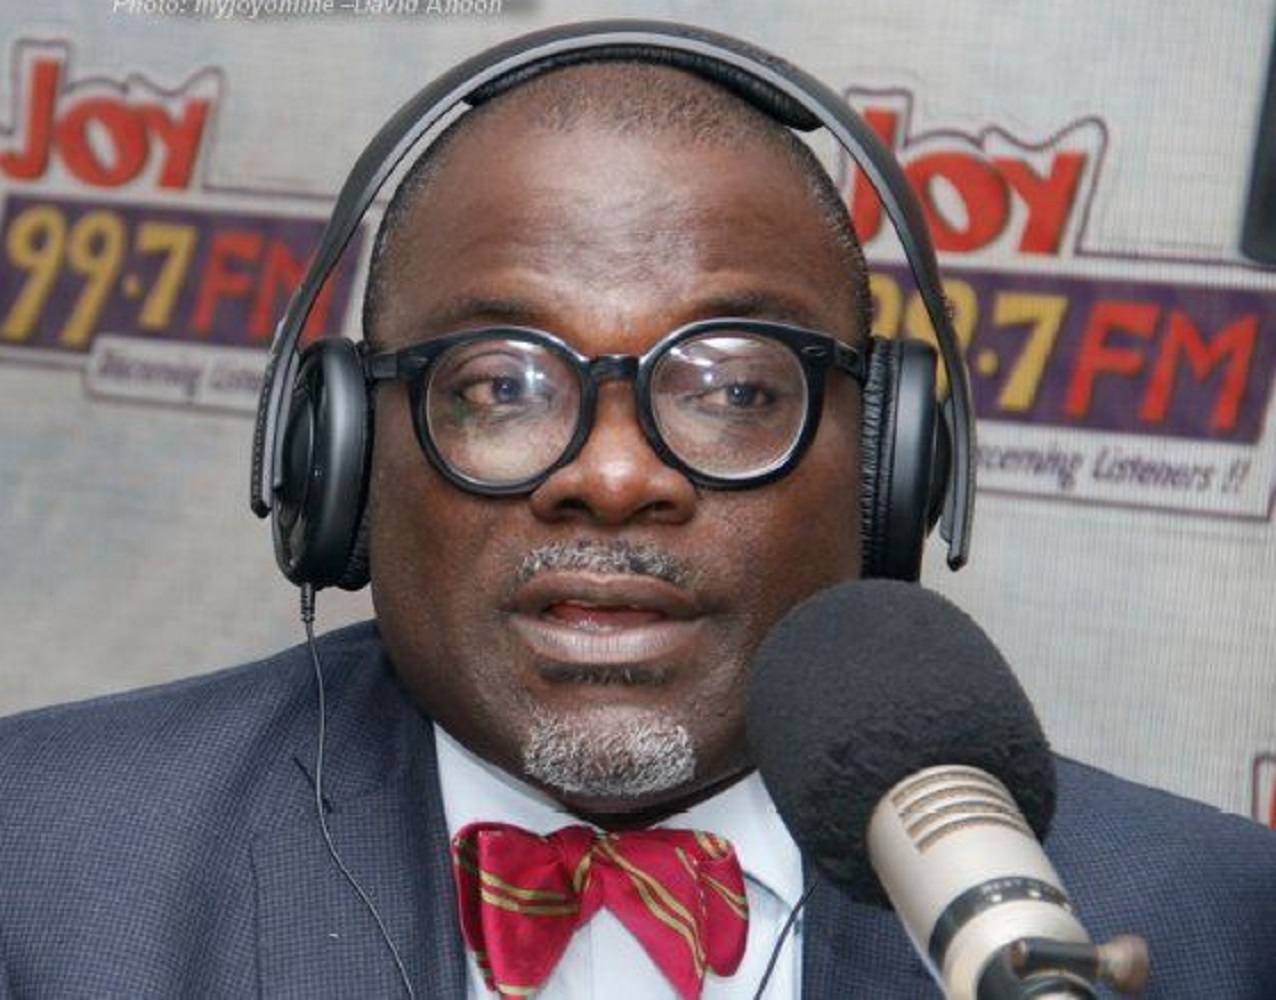 Don't borrow money for Christmas - Financial advisor warns Ghanaians